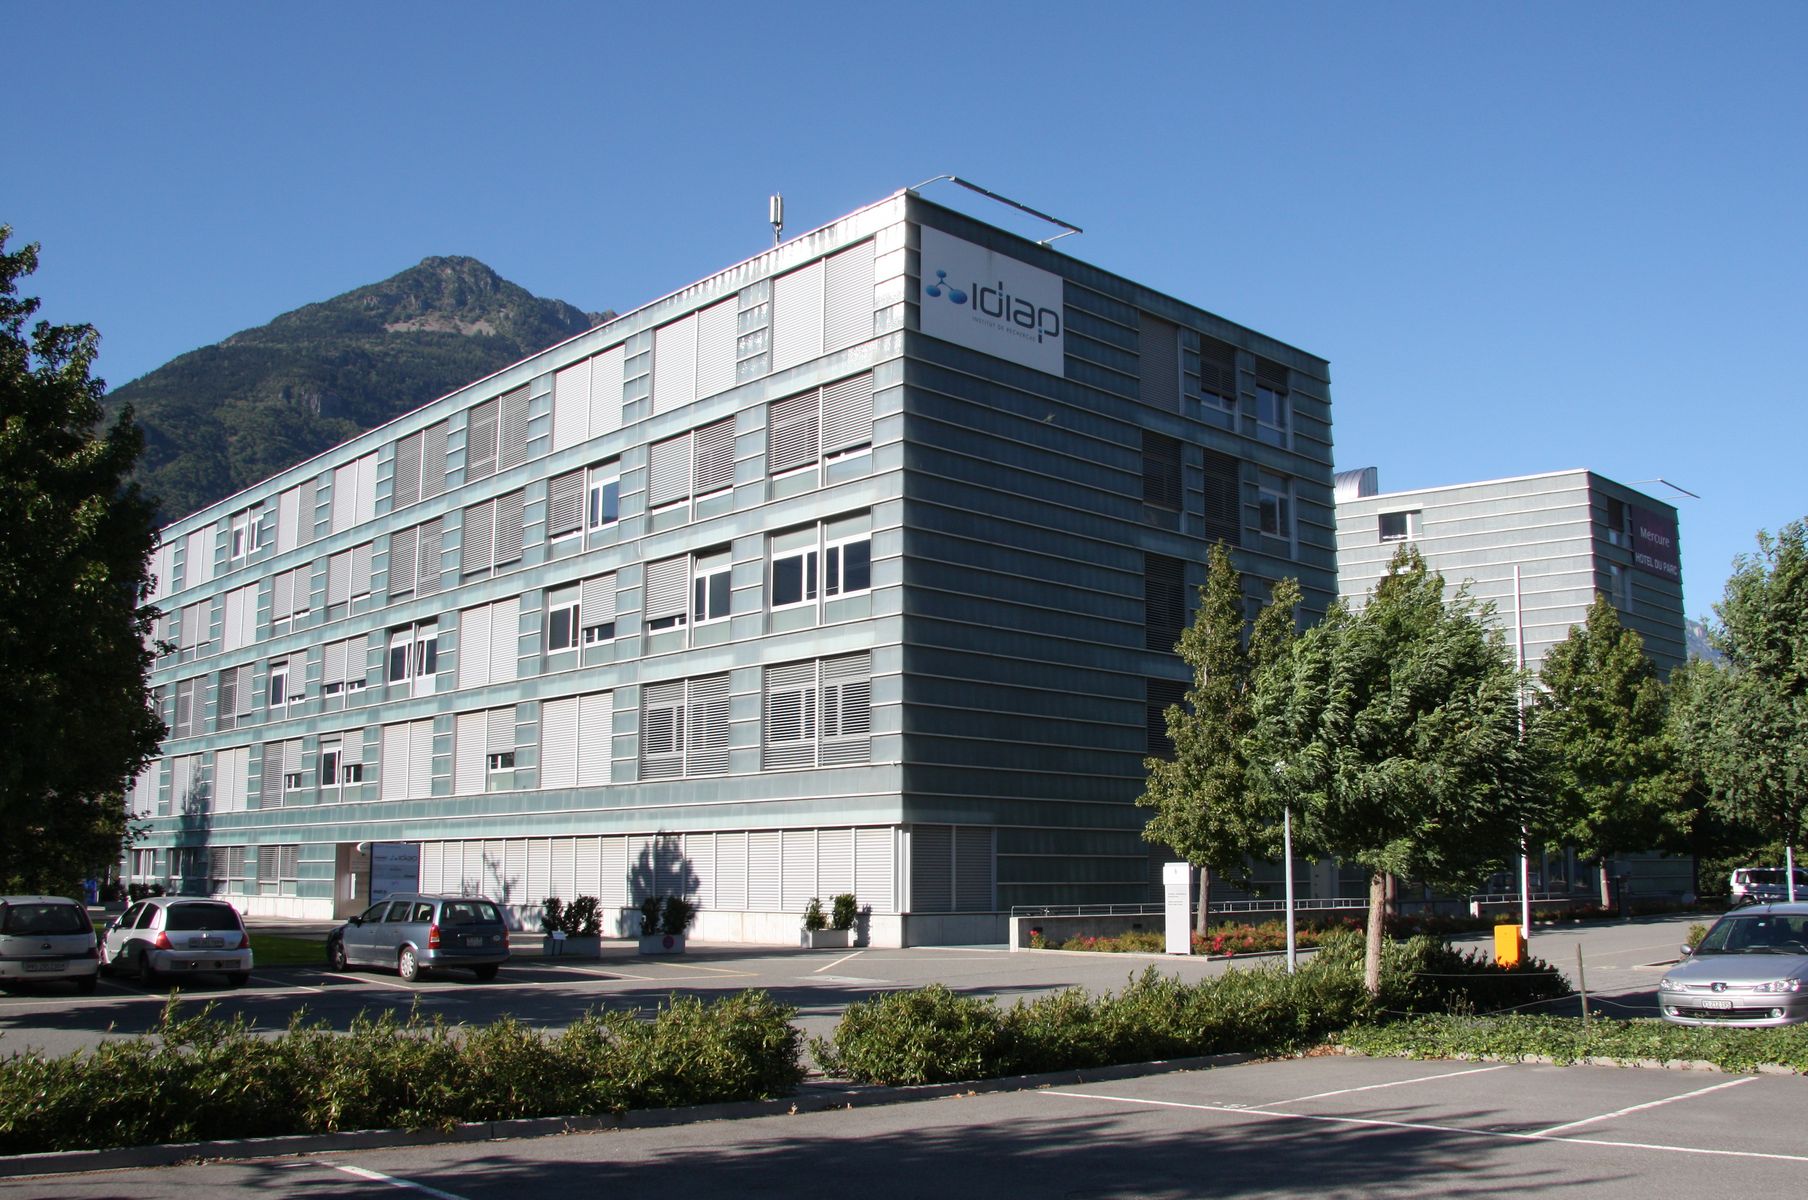 Créé en 1991, l'IDIAP s'est installé dans une aile de l'Hôtel du Parc à Martigny en 2007. Aujourd'hui, l'institut de recherches ouvre ses portes au public.
ldd